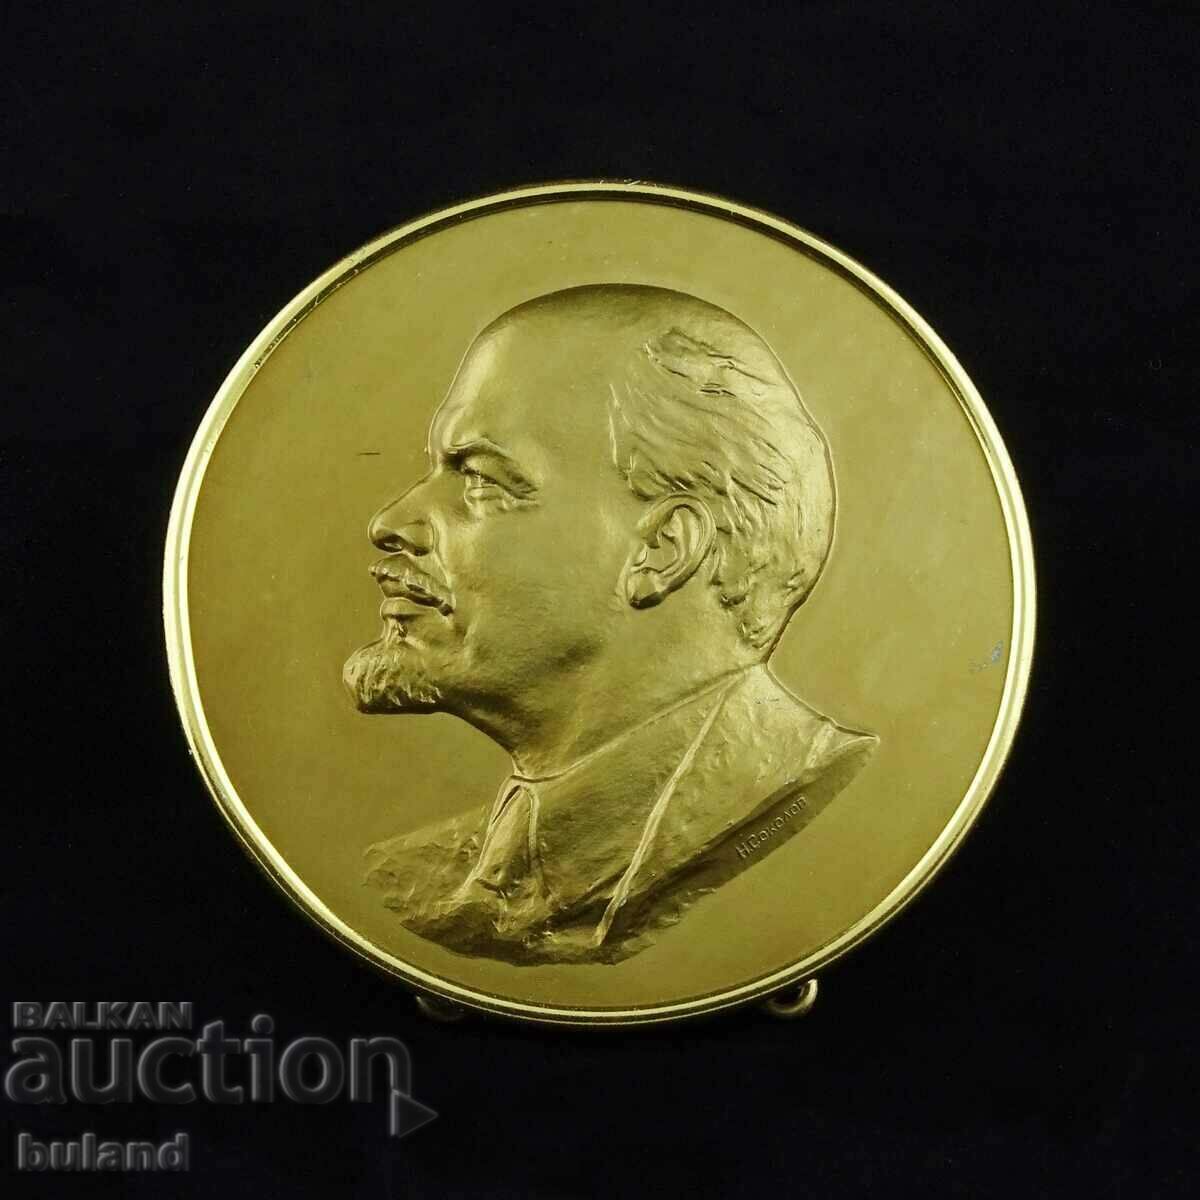 Σοβιετικό μετάλλιο μεγάλης επιφάνειας εργασίας Βλαντιμίρ Ίλιτς Λένιν ΕΣΣΔ